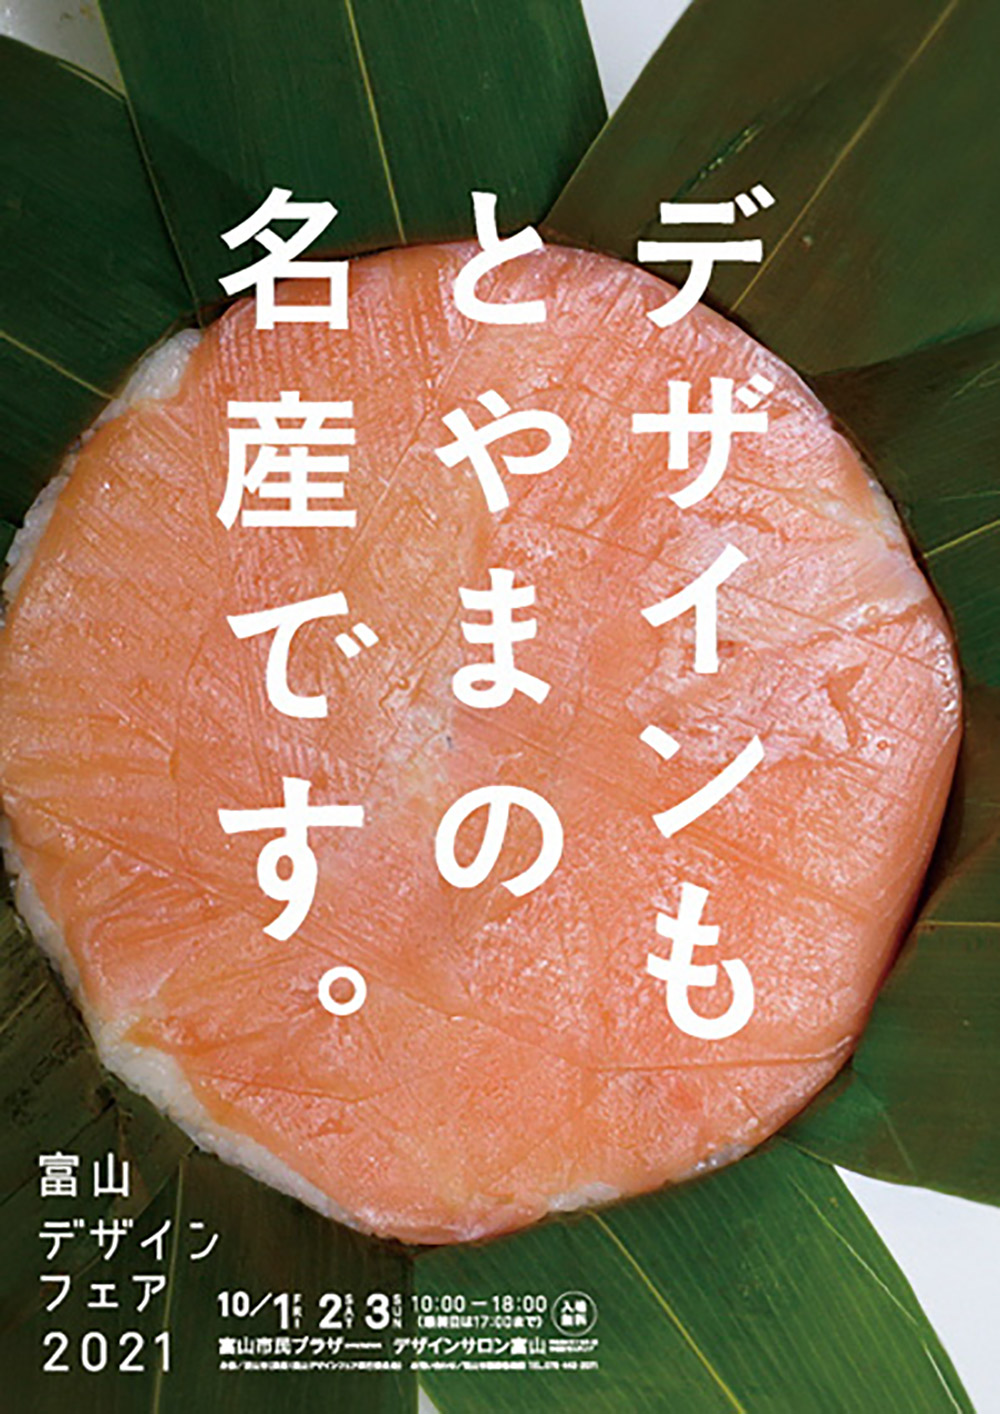 15张优质的日本展览海报